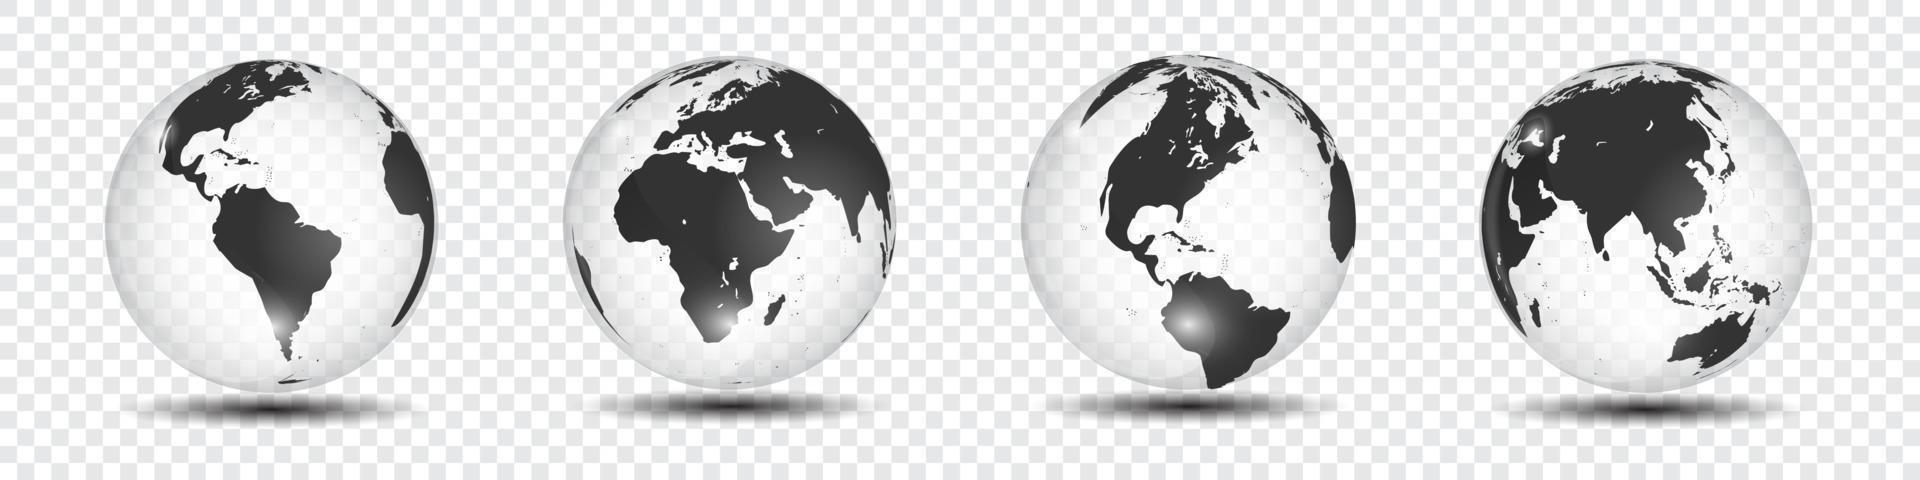 realistisk världskarta i globform av jorden på transparent bakgrund. vektor illustration